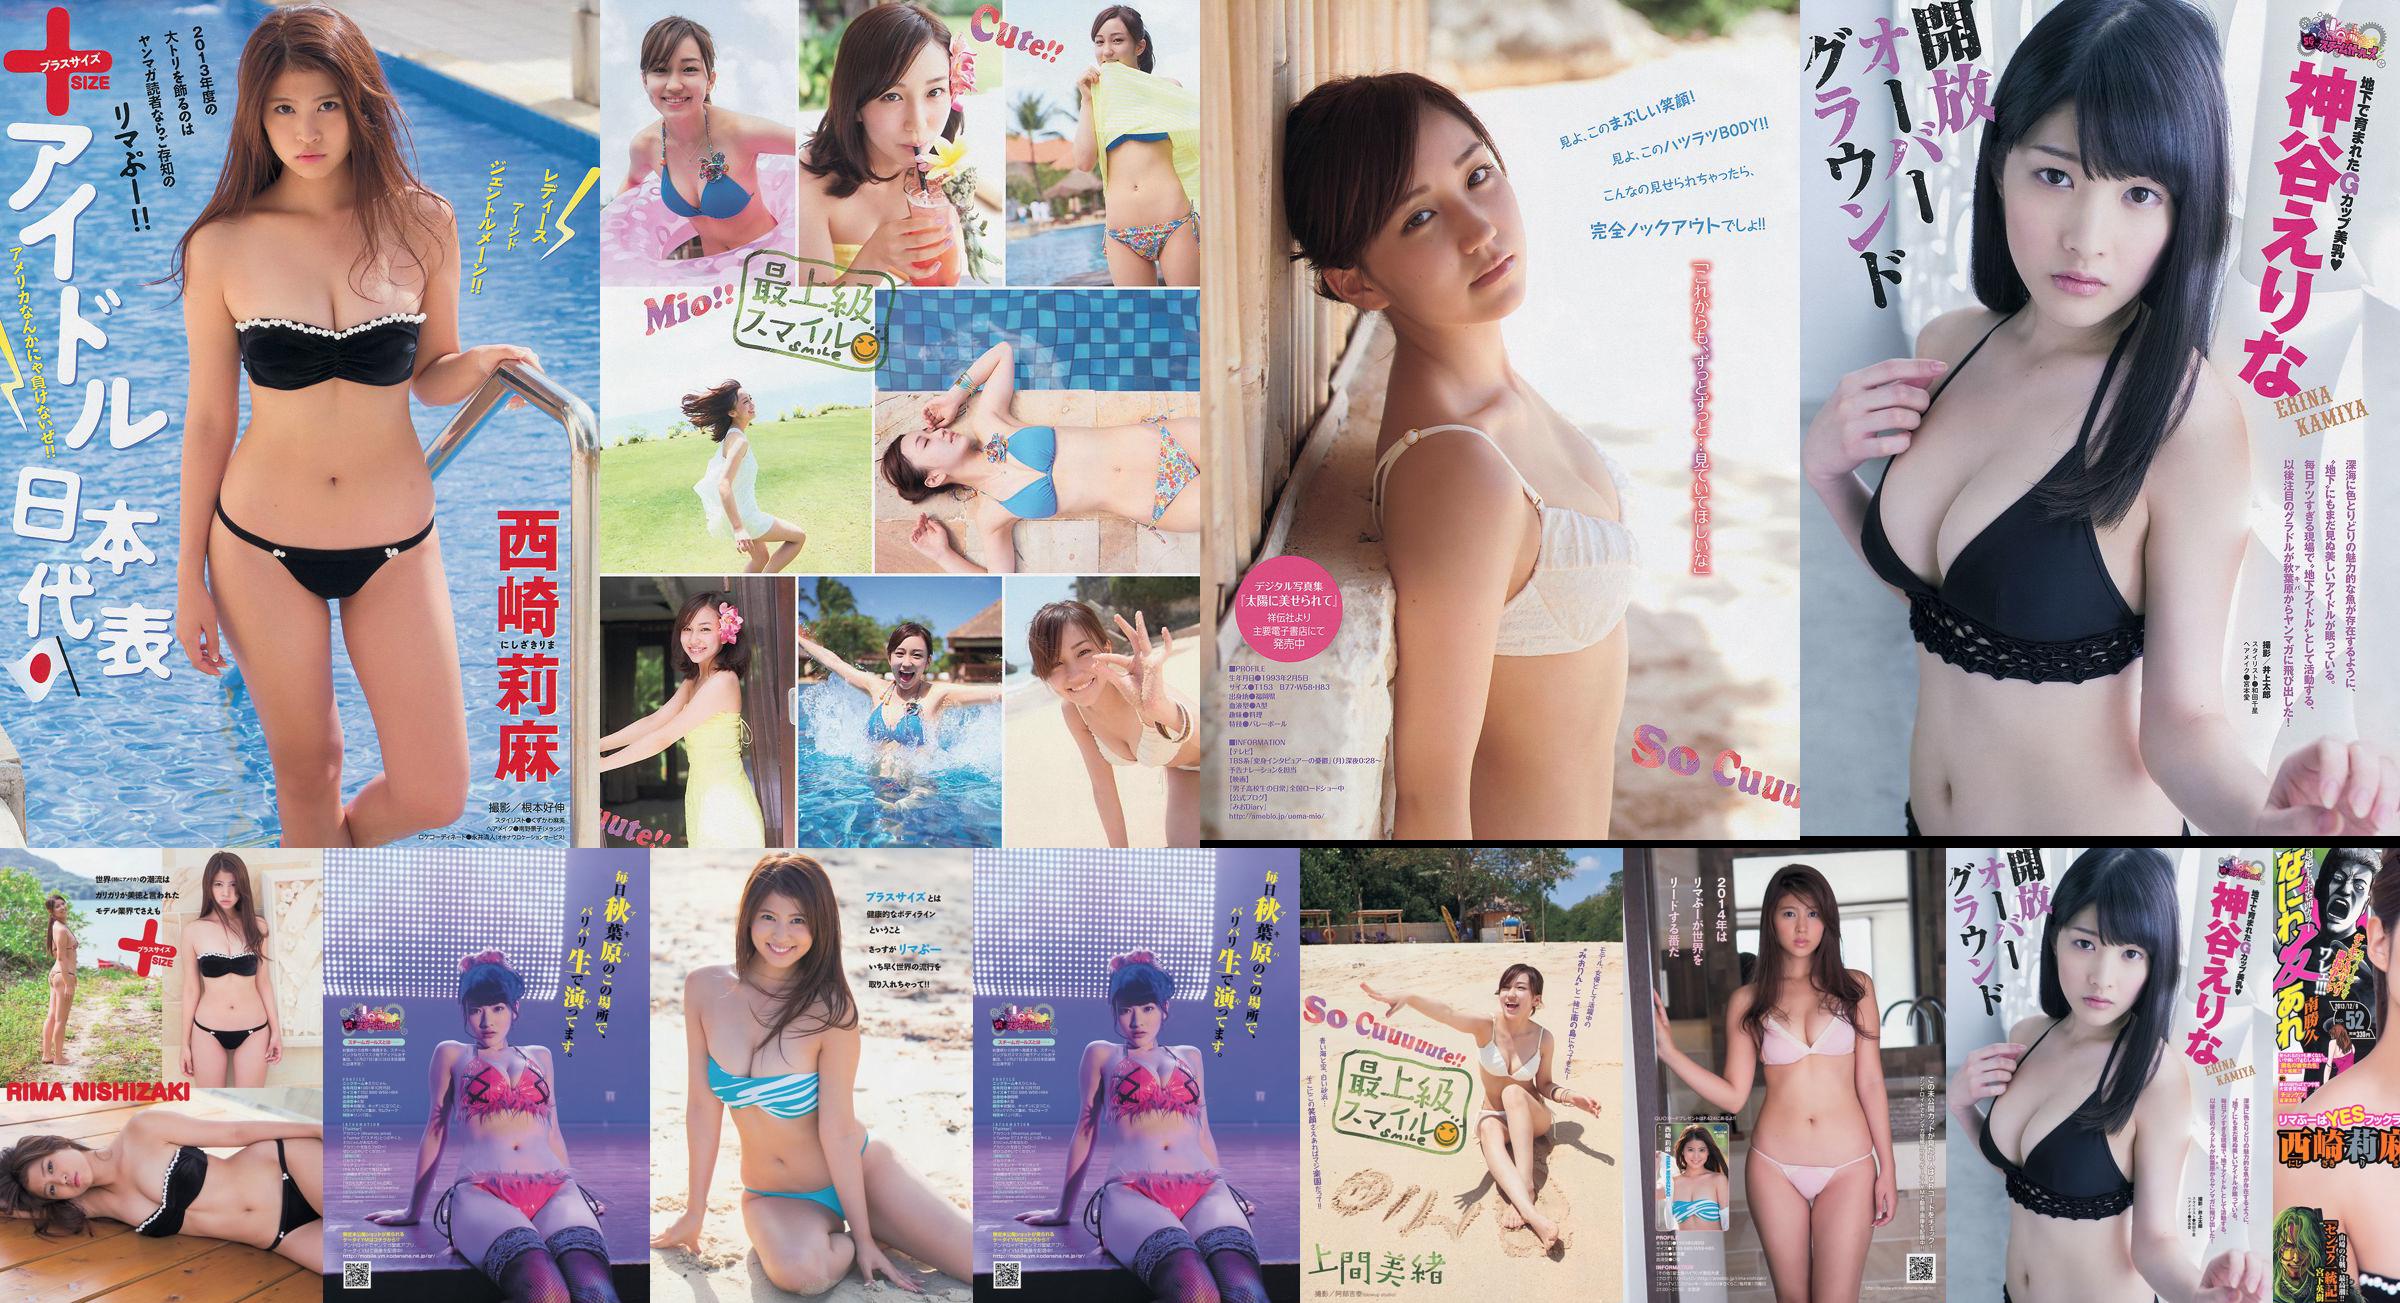 [Tạp chí trẻ] Rima Nishizaki Mio Uema Erina Kamiya 2013 Ảnh số 52 Moshi No.c9865c Trang 2